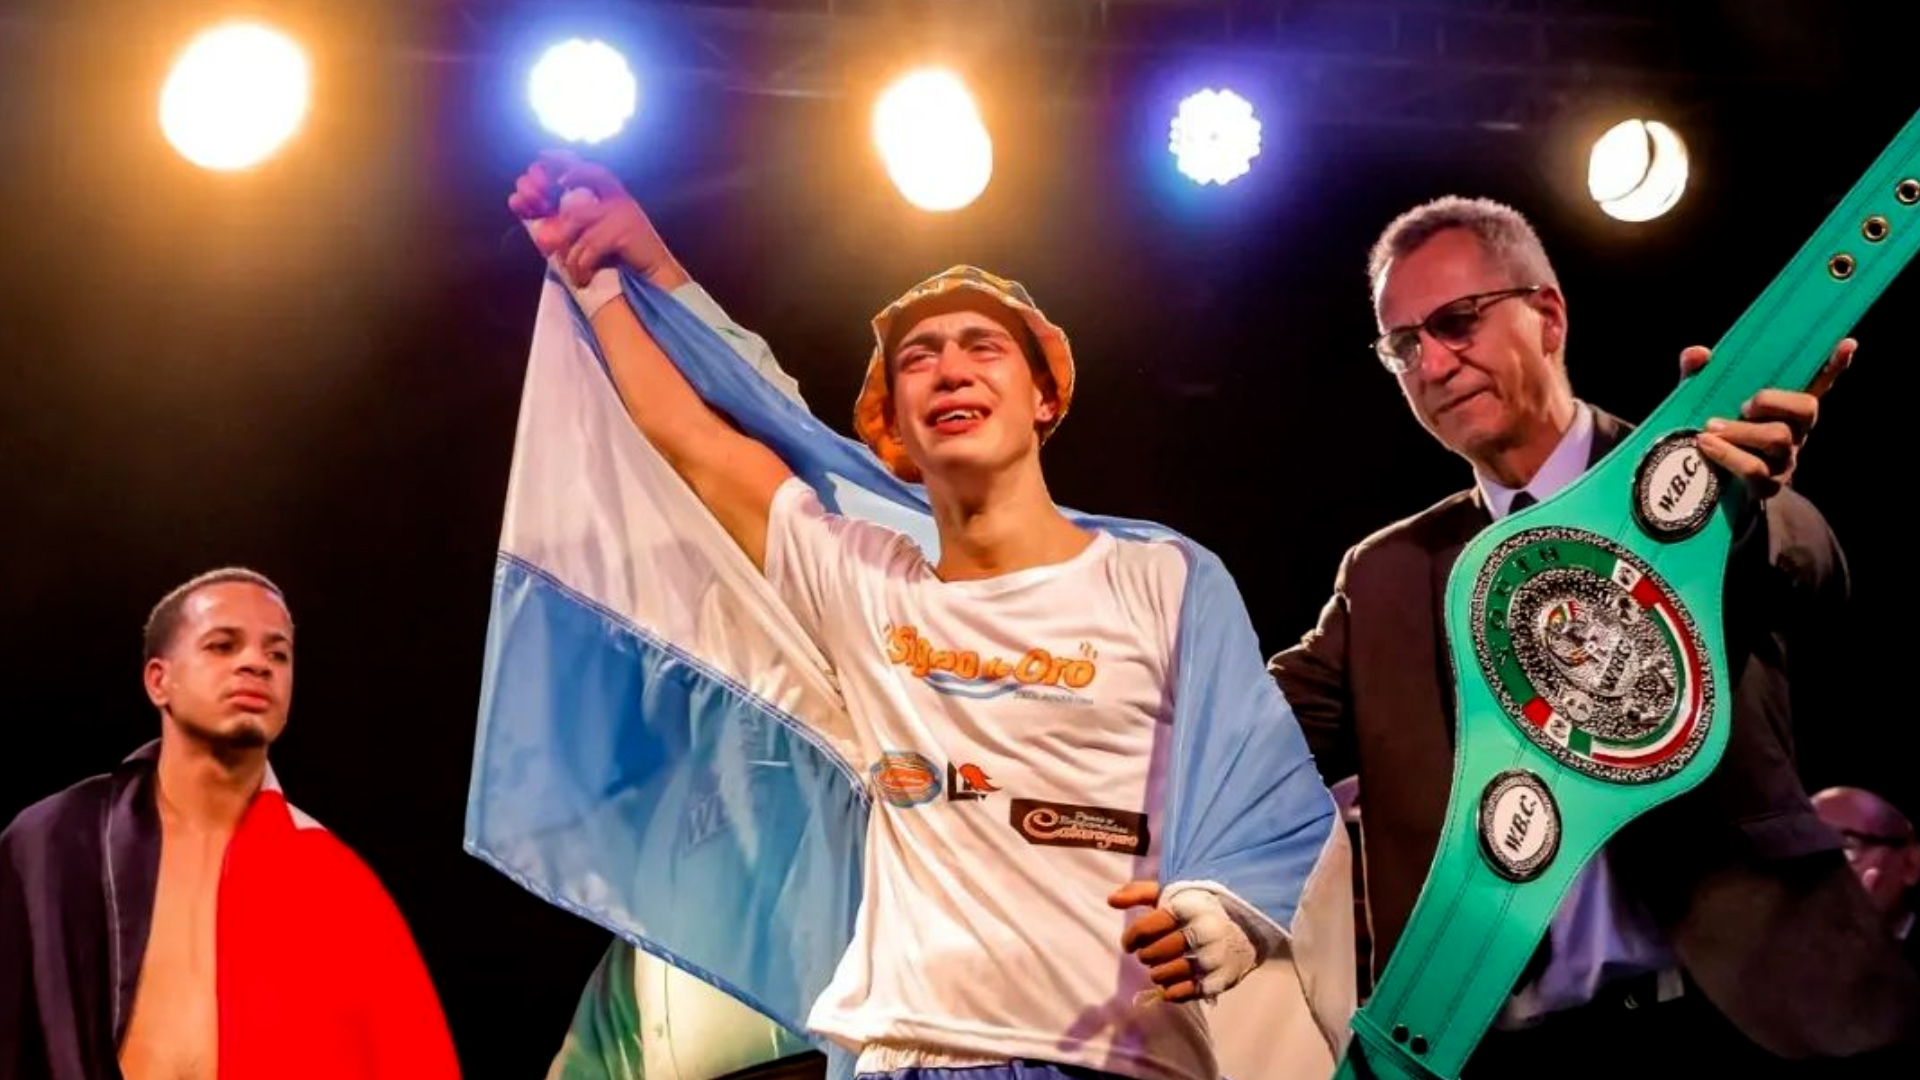 De telefonista en una pizzería a campeón mundial juvenil de boxeo: la doble vida del argentino Ezequiel Palaversic